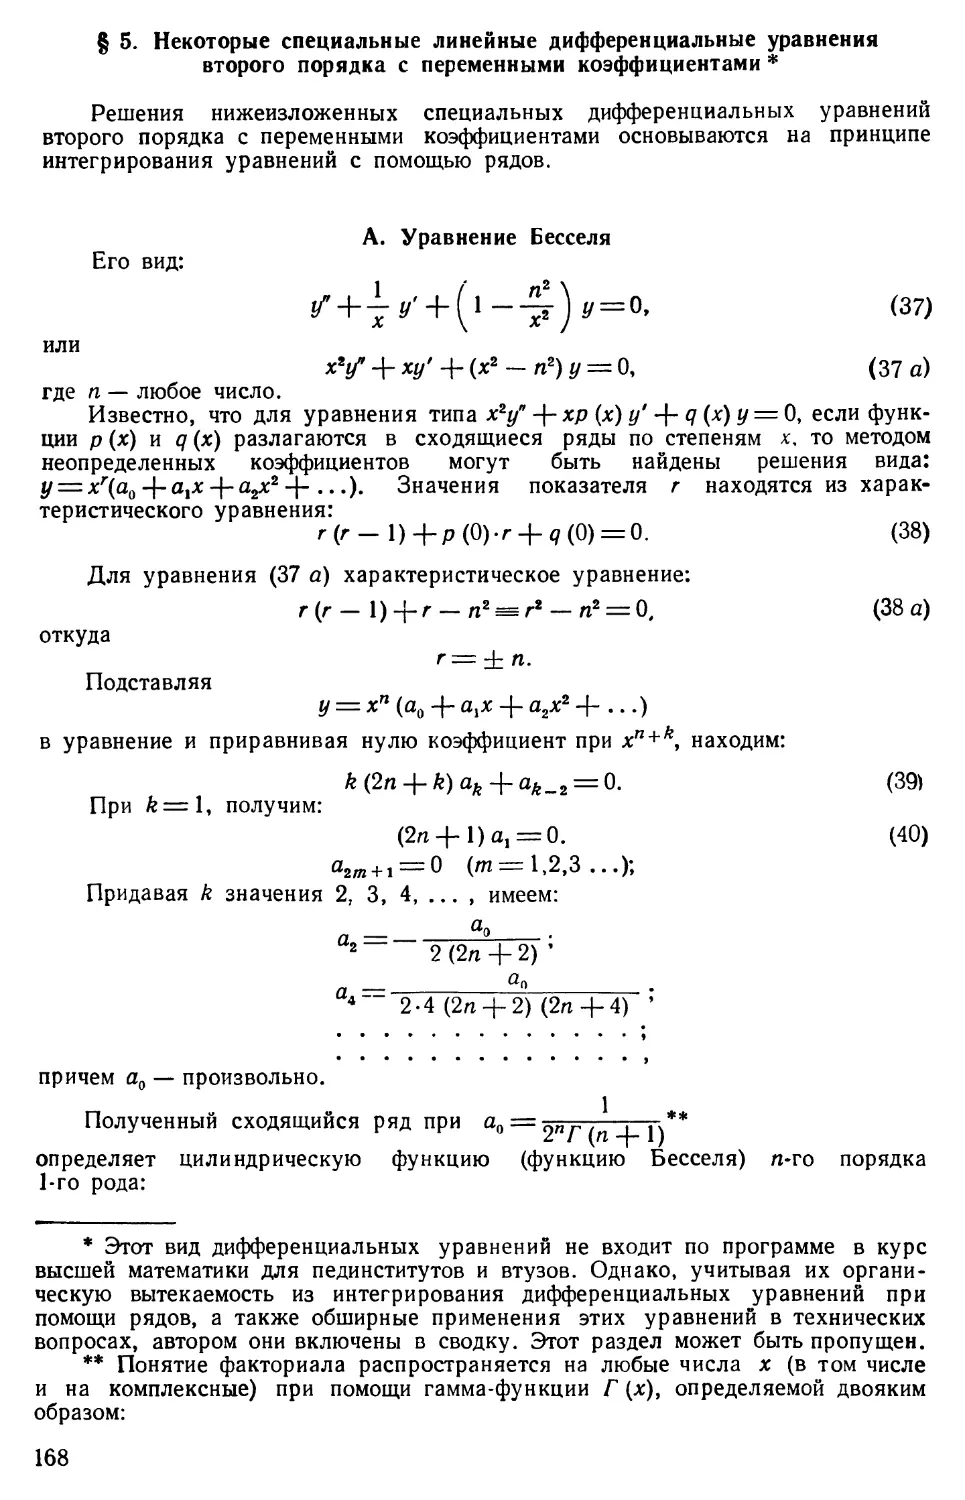 § 5. Некоторые специальные линейные дифференциальные уравнения второго порядка с переменными коэффициентами